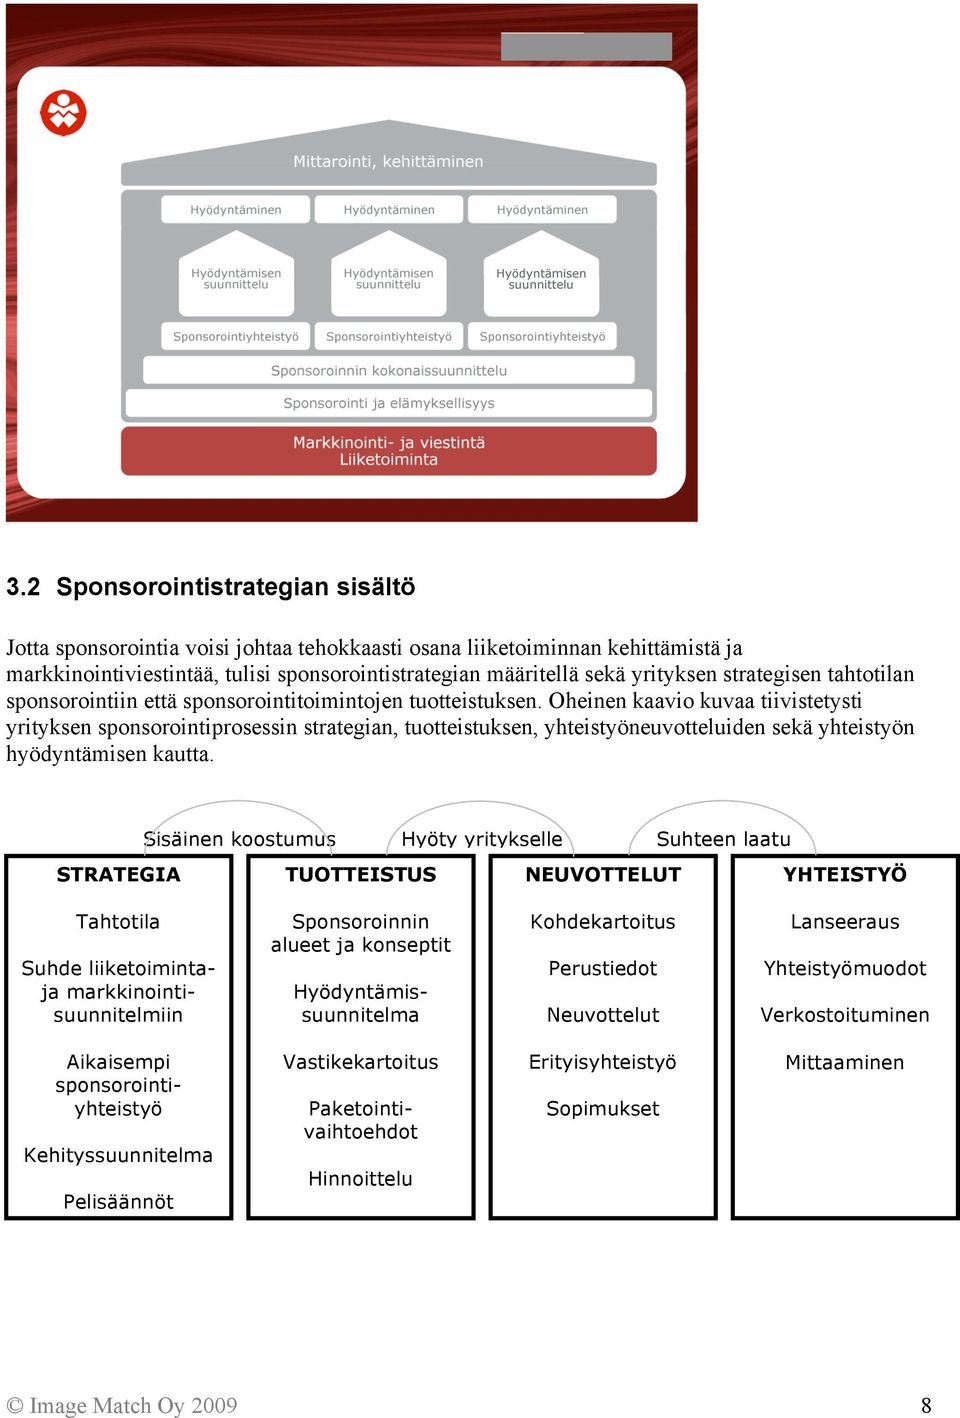 Oheinen kaavio kuvaa tiivistetysti yrityksen sponsorointiprosessin strategian, tuotteistuksen, yhteistyöneuvotteluiden sekä yhteistyön hyödyntämisen kautta.